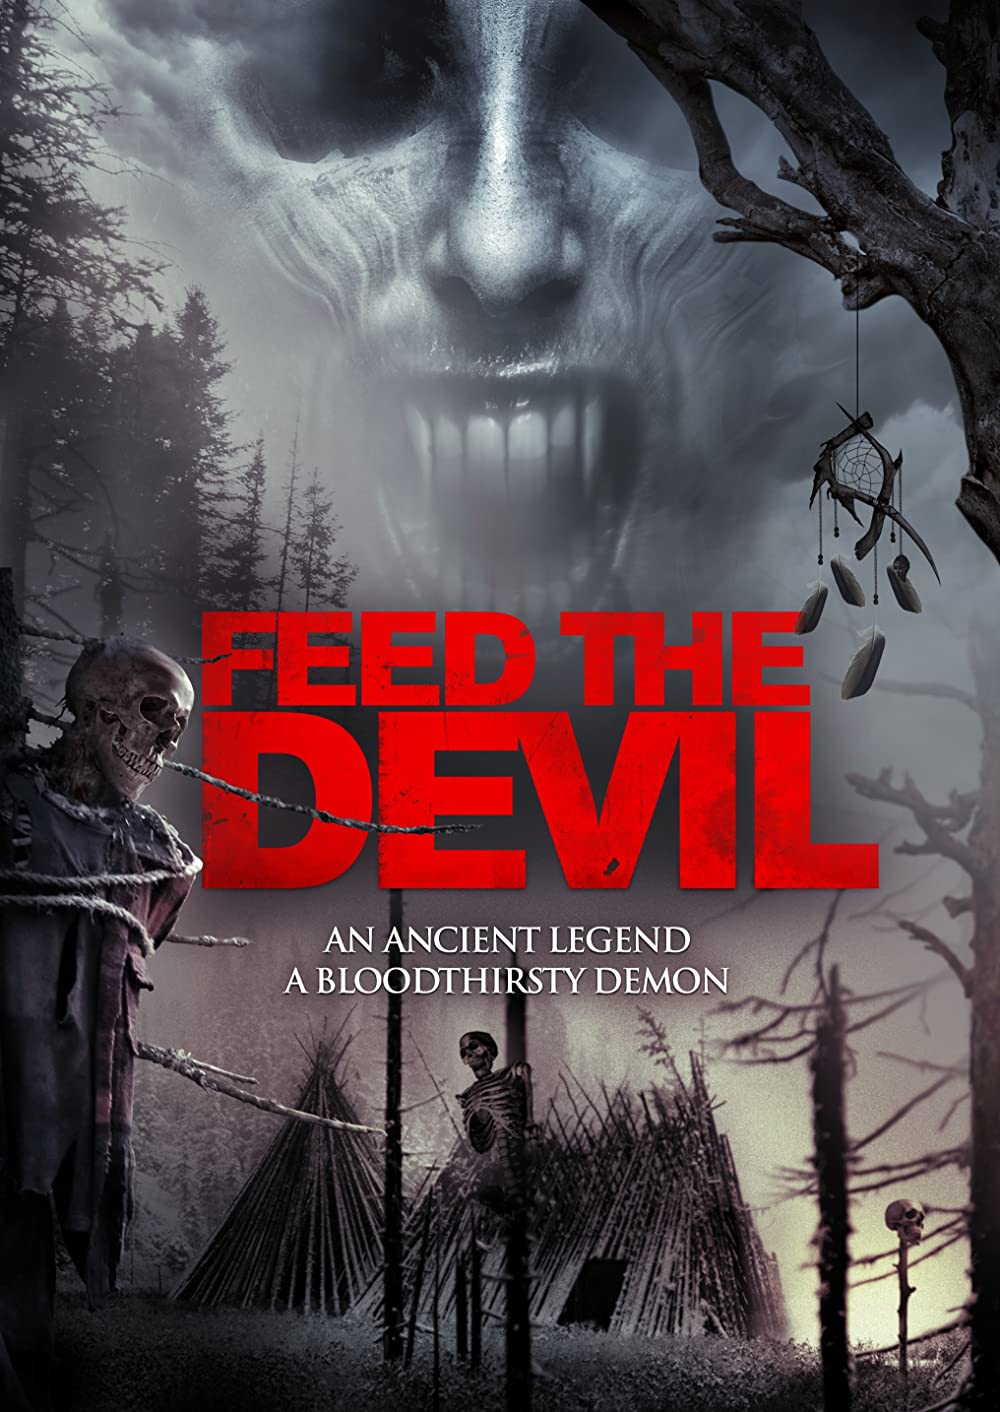 Filmbeschreibung zu Feed the Devil